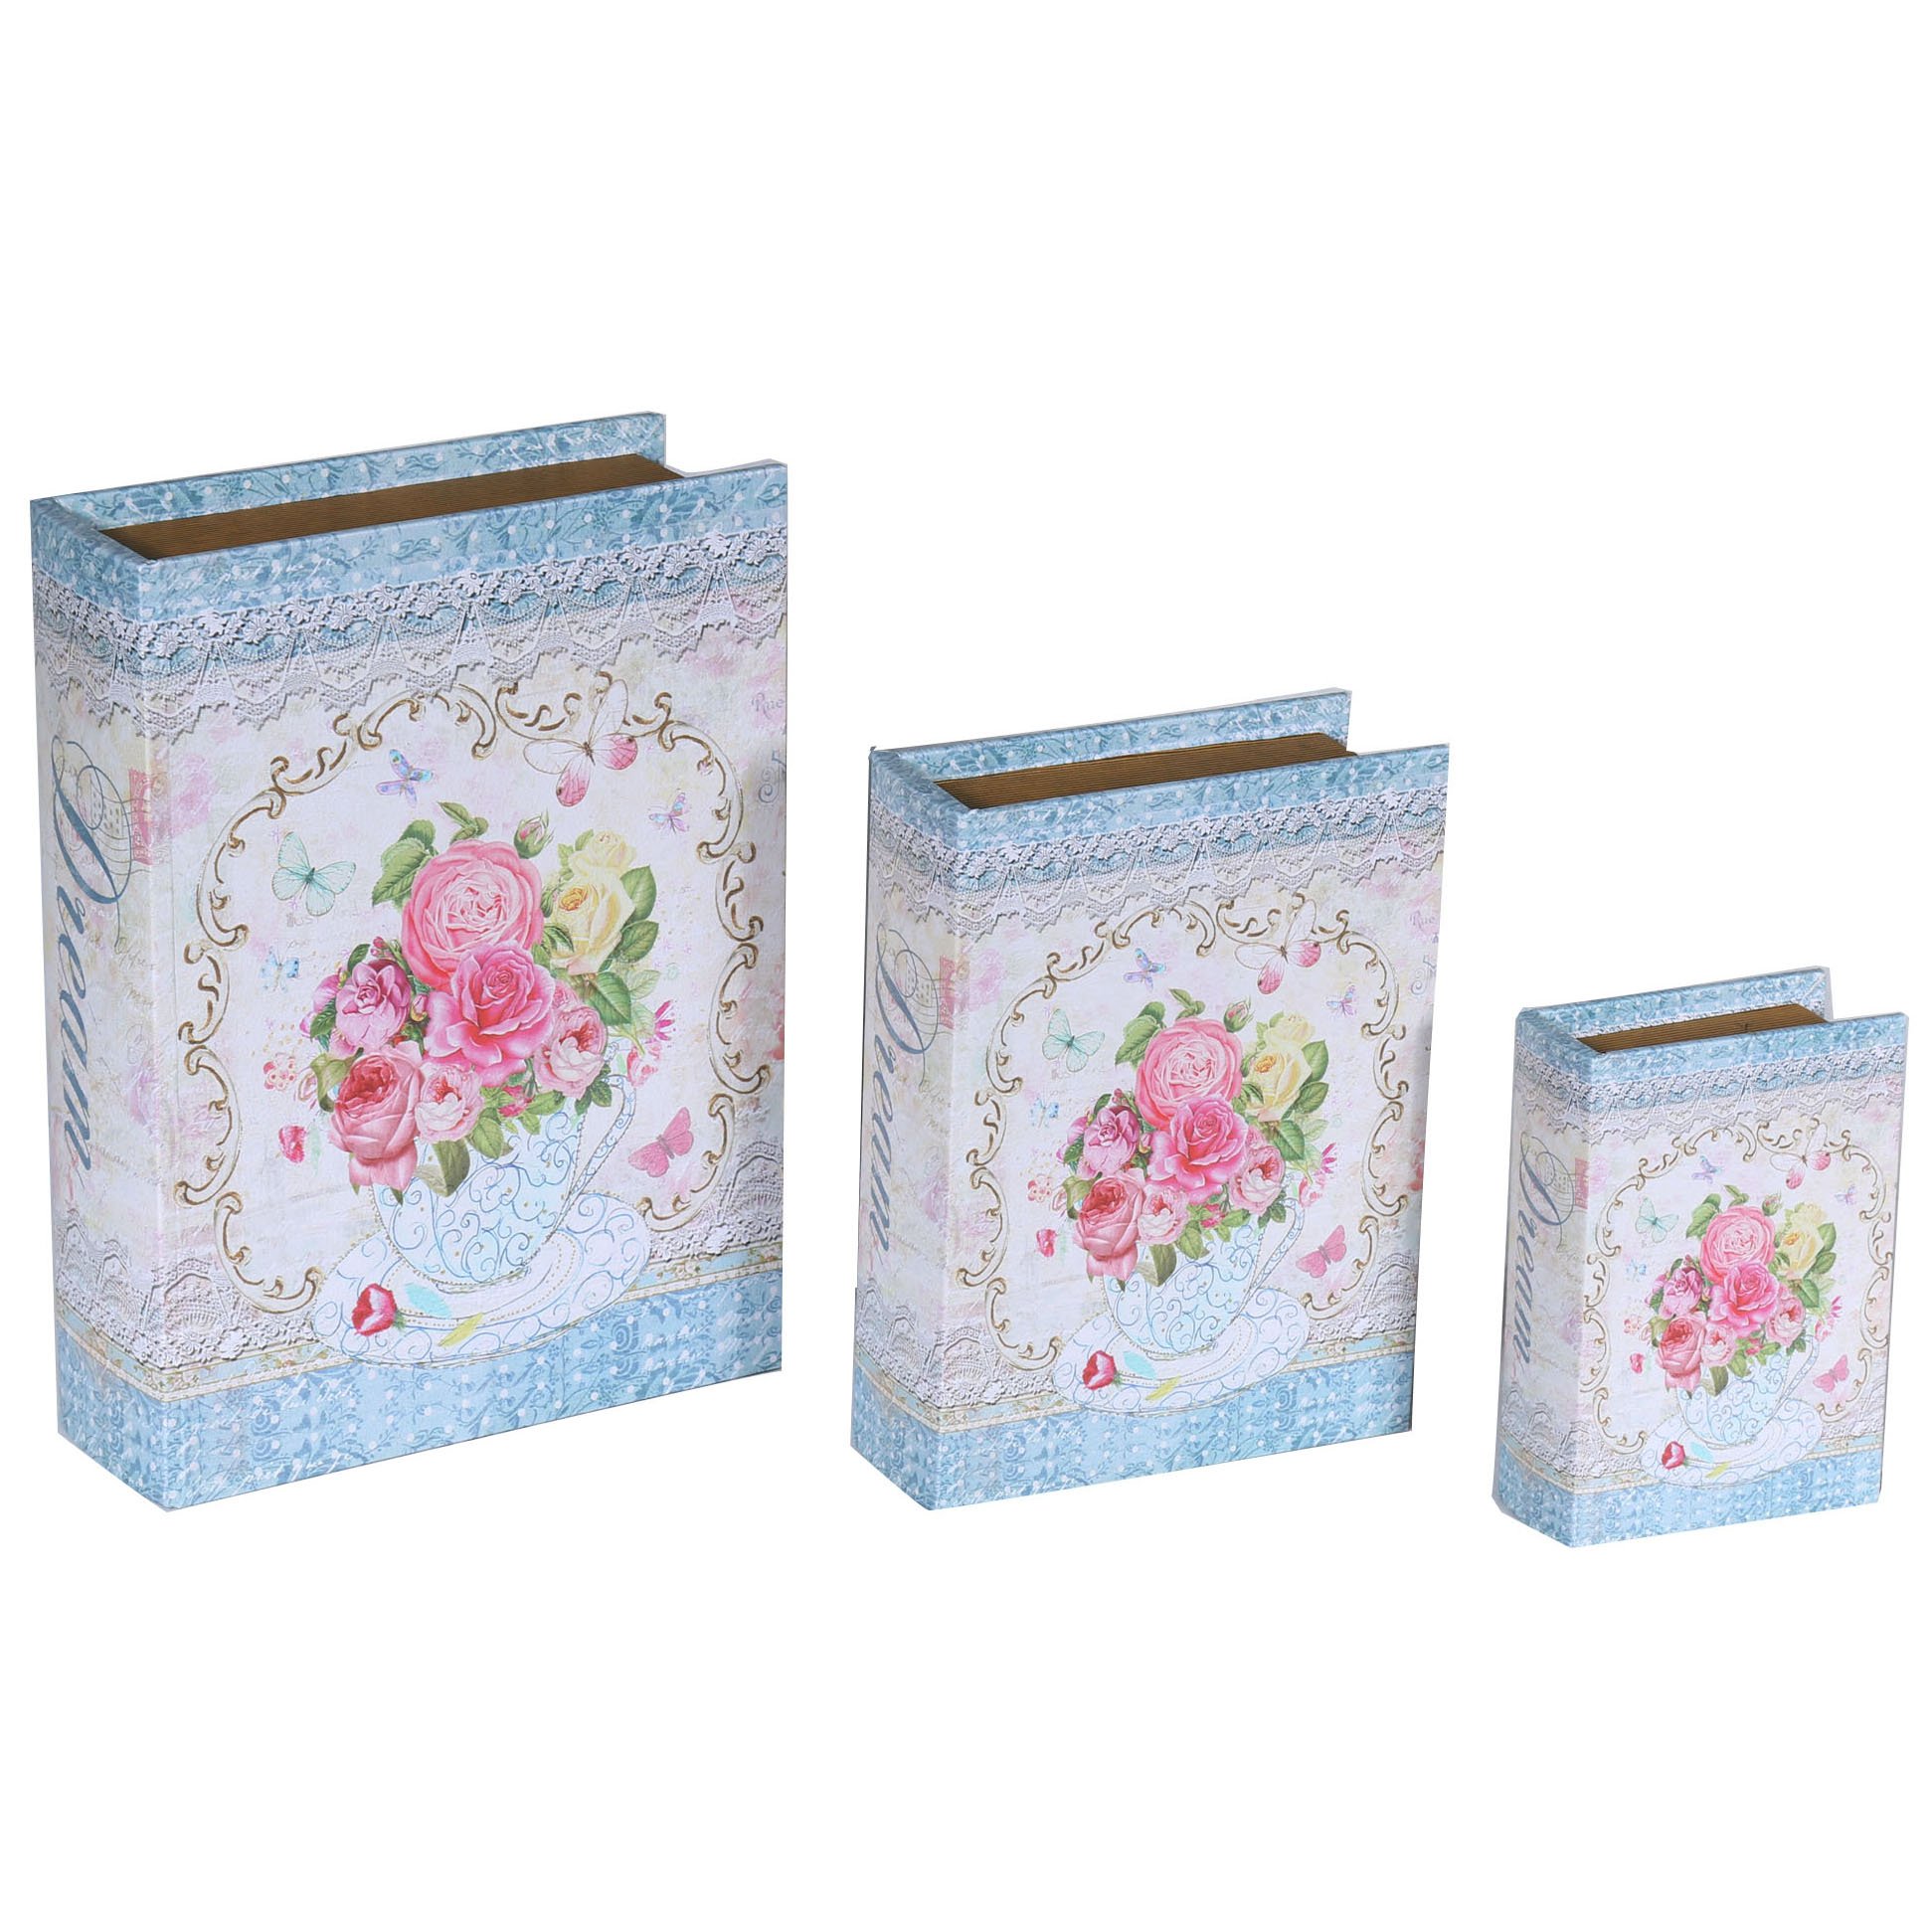 Decorative Book Boxes Wholesale SJ16632